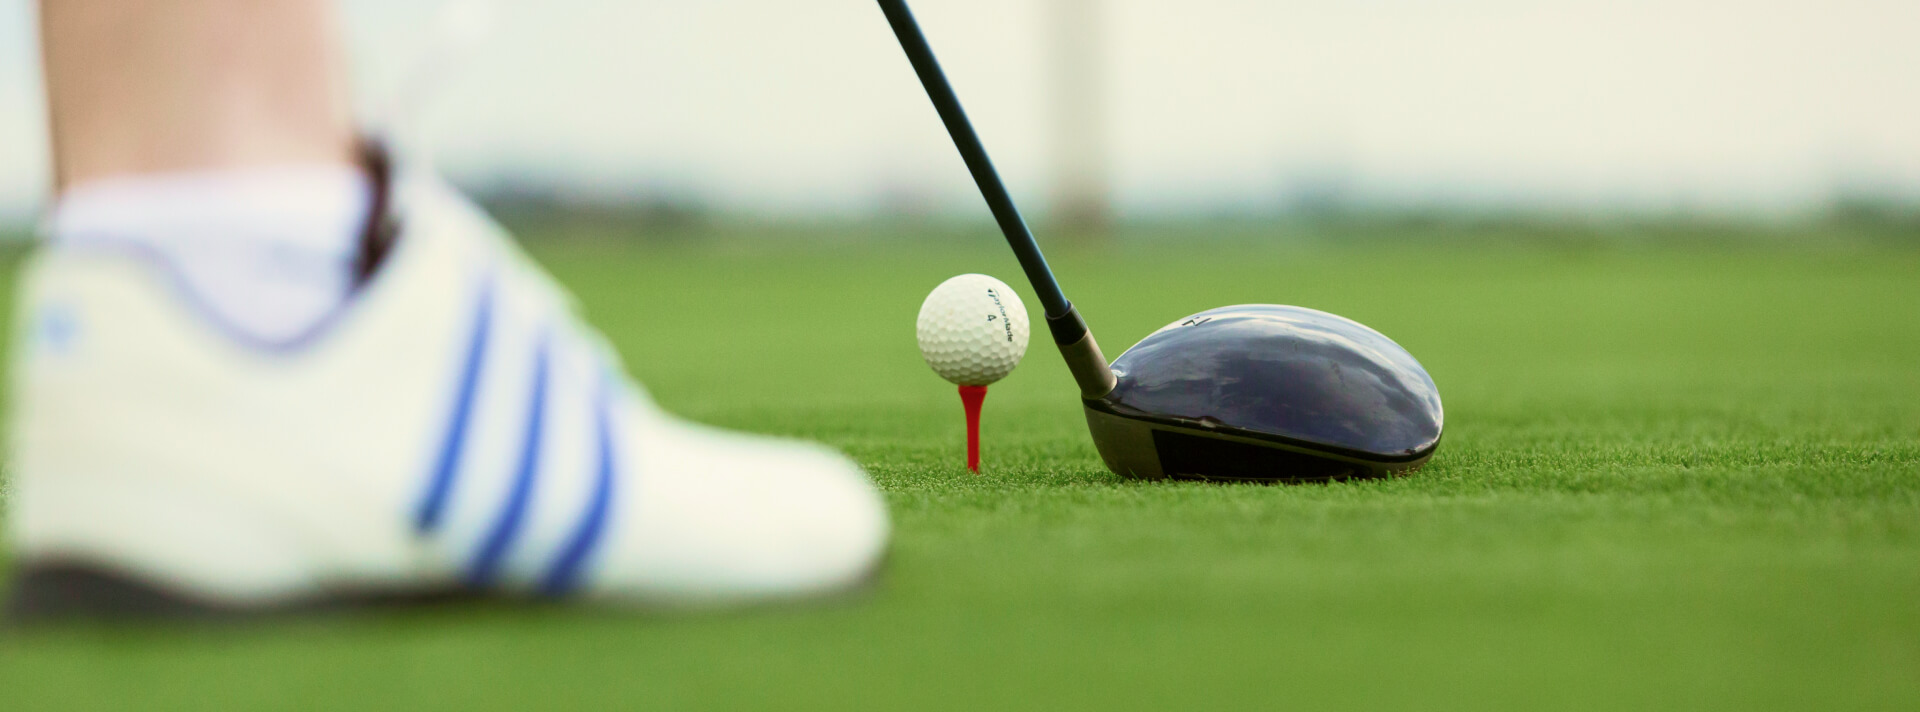 Close da bola de golf sobre a base e taco em posição para fazer a jogada.